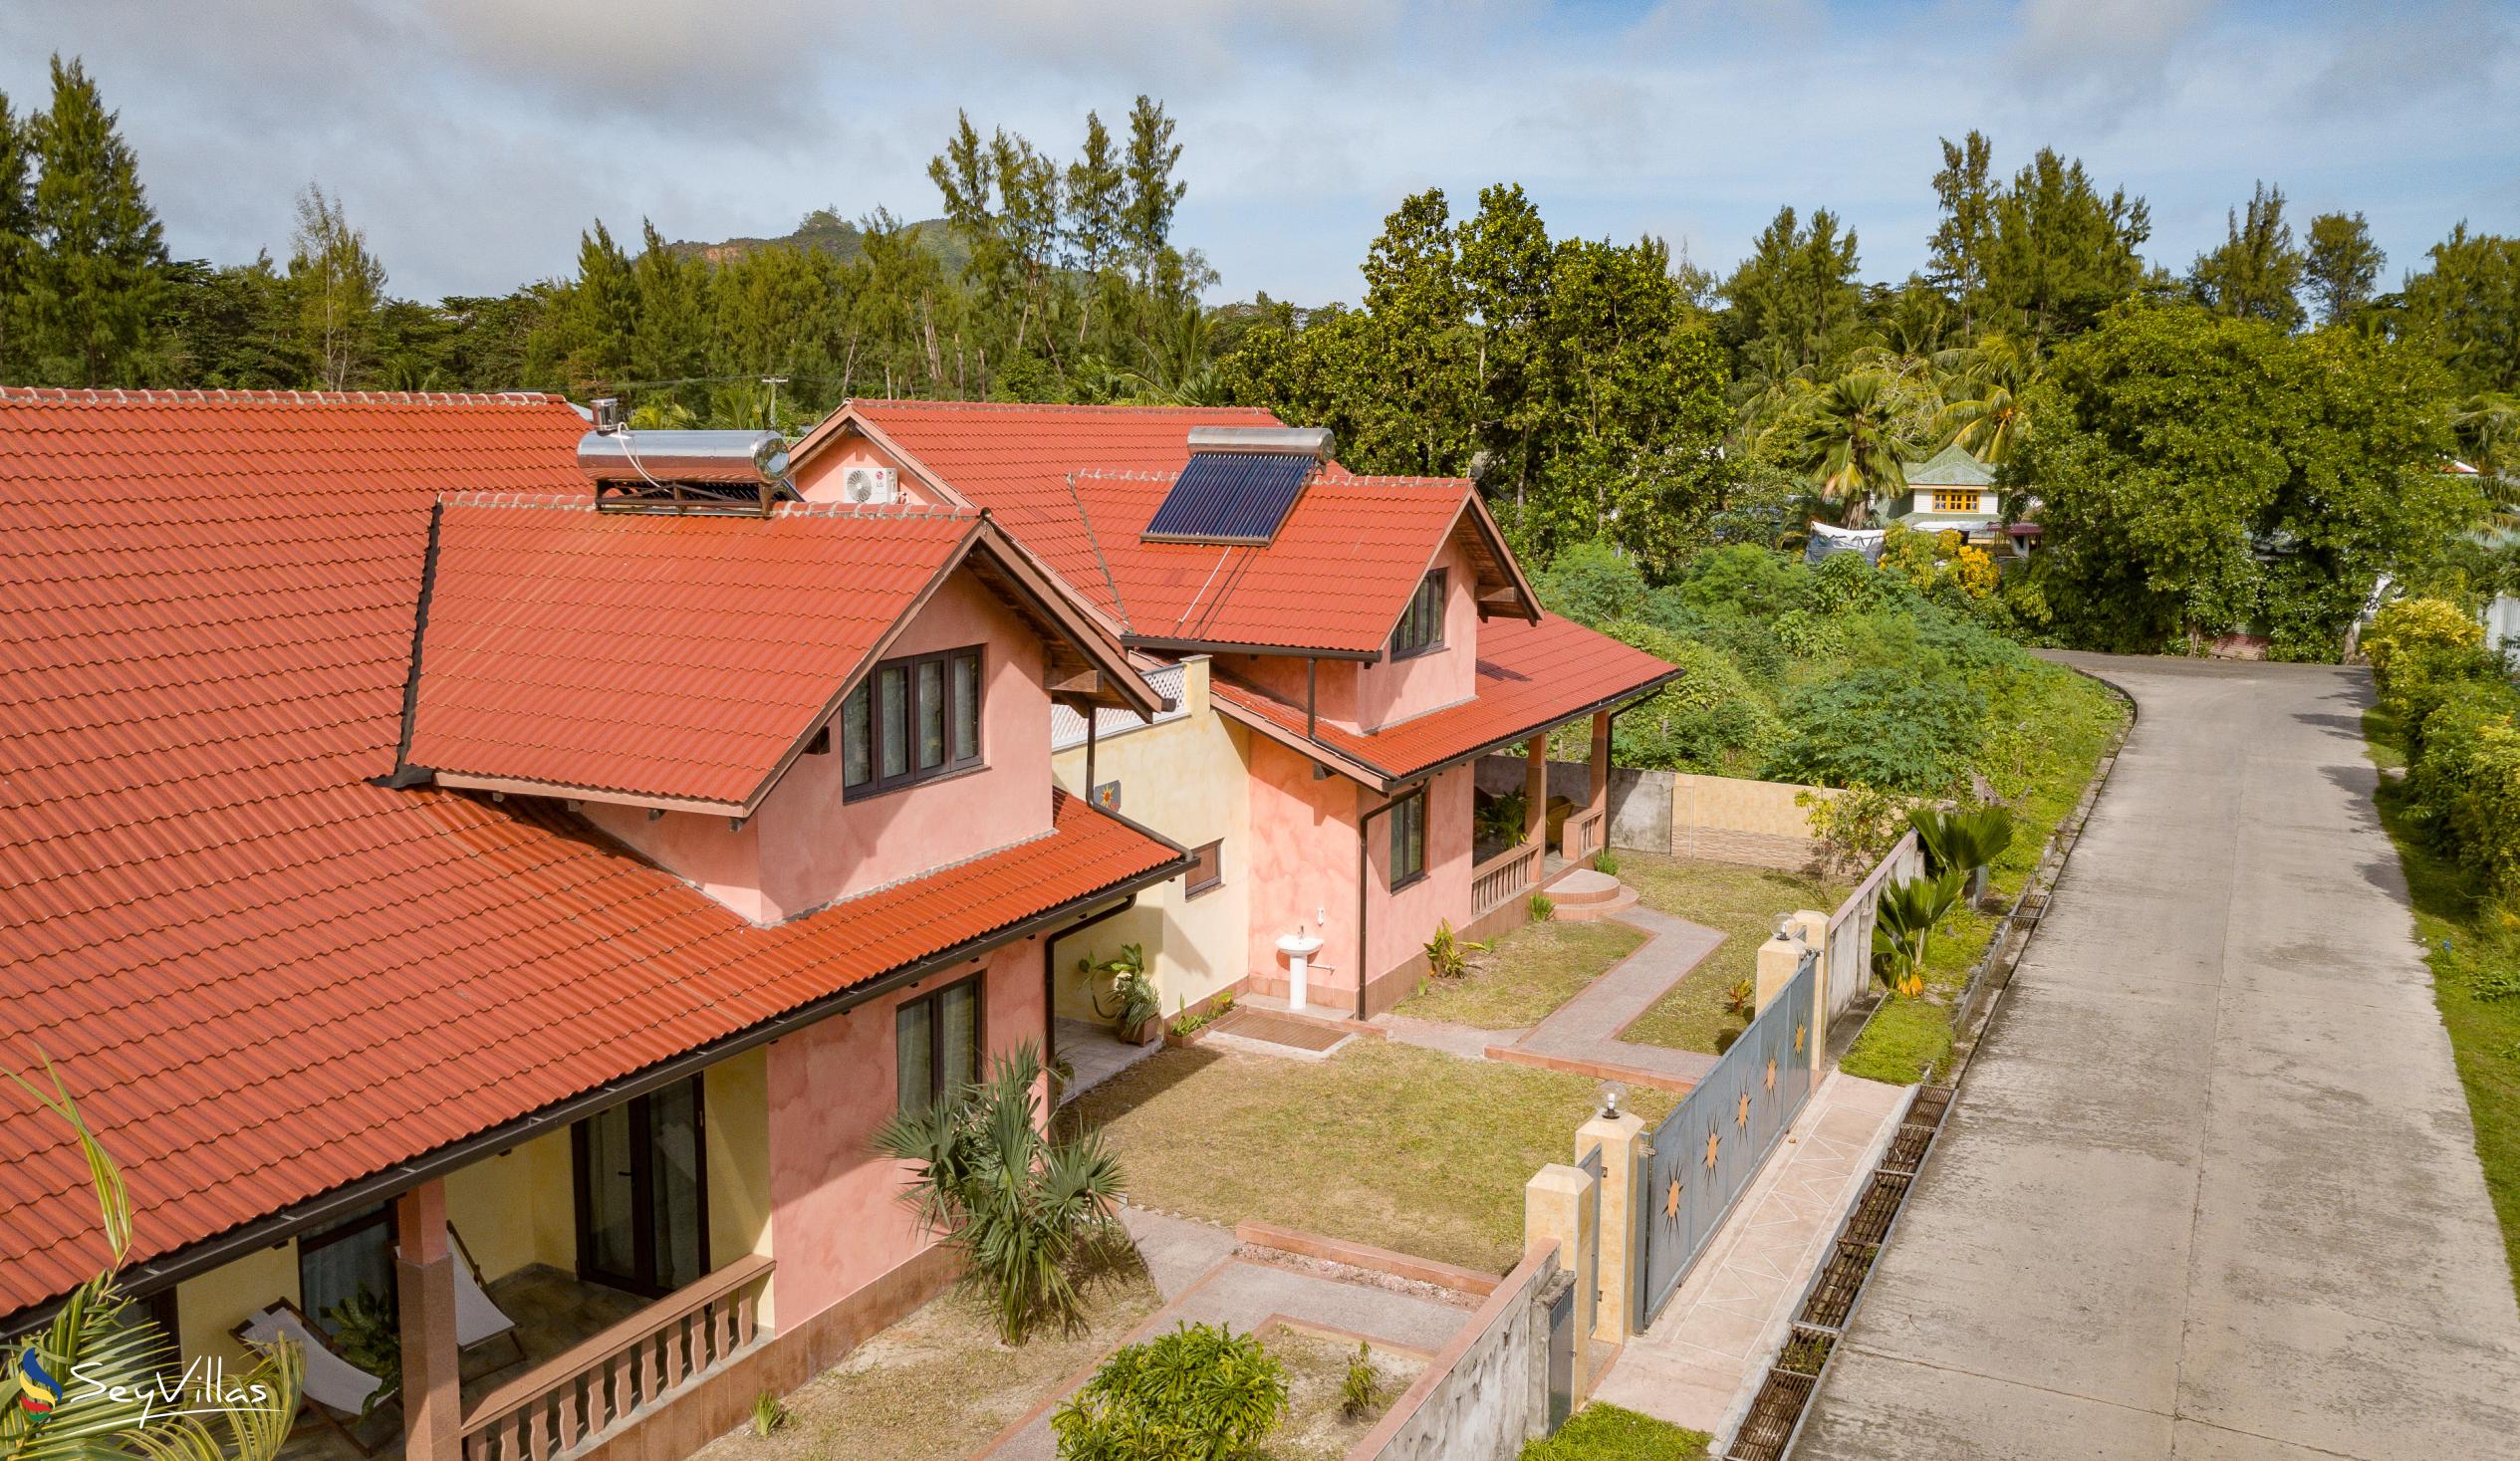 Foto 3: Villa Sole - Aussenbereich - Praslin (Seychellen)